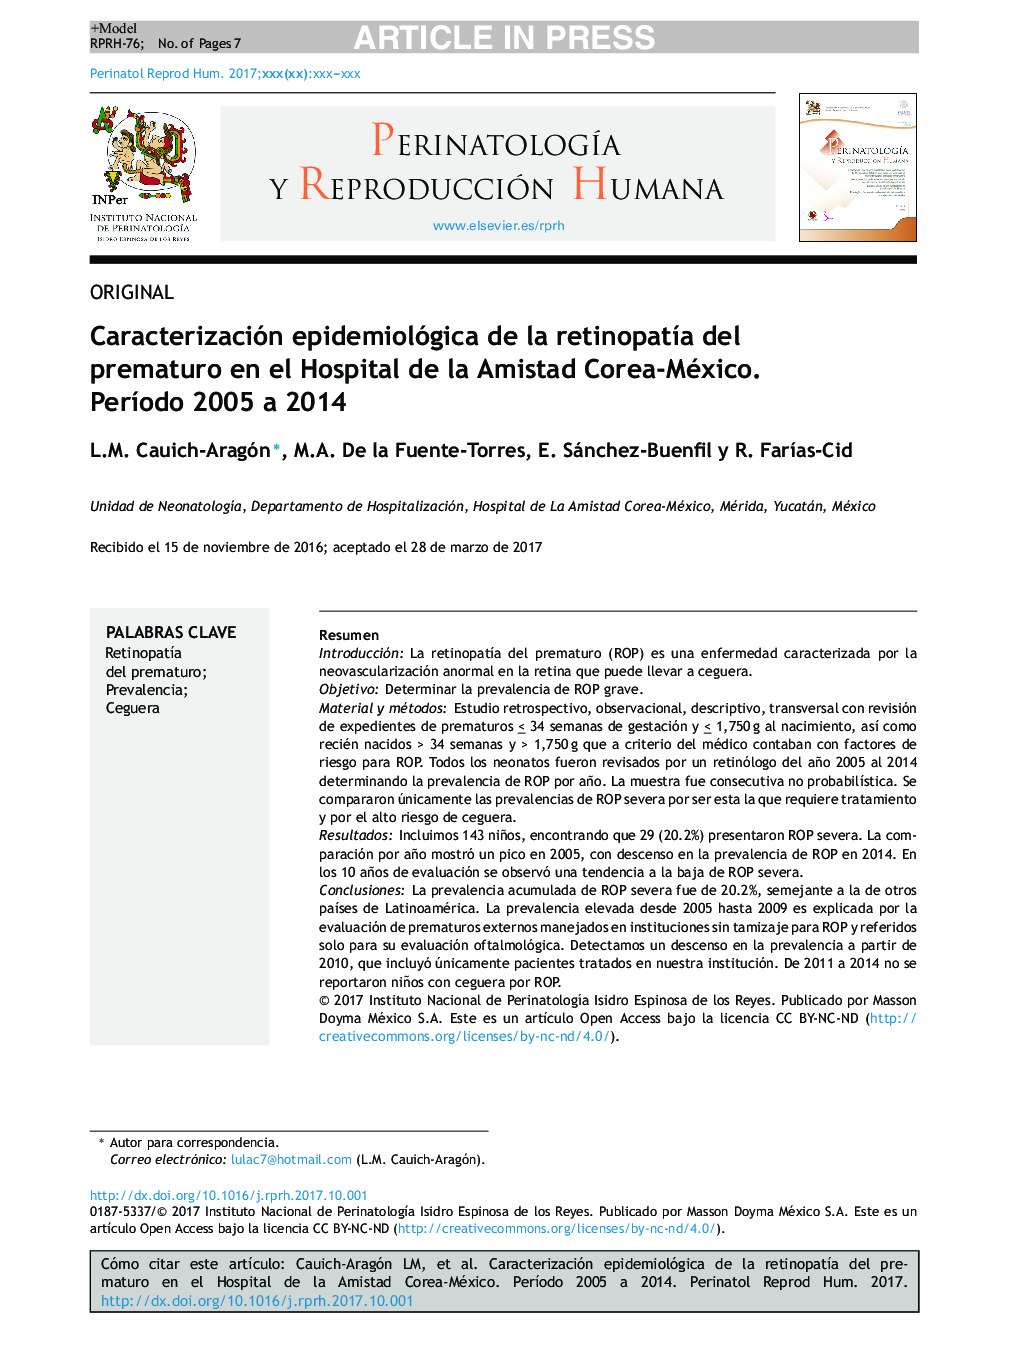 Caracterización epidemiológica de la retinopatÃ­a del prematuro en el Hospital de la Amistad Corea-México. PerÃ­odo 2005 a 2014